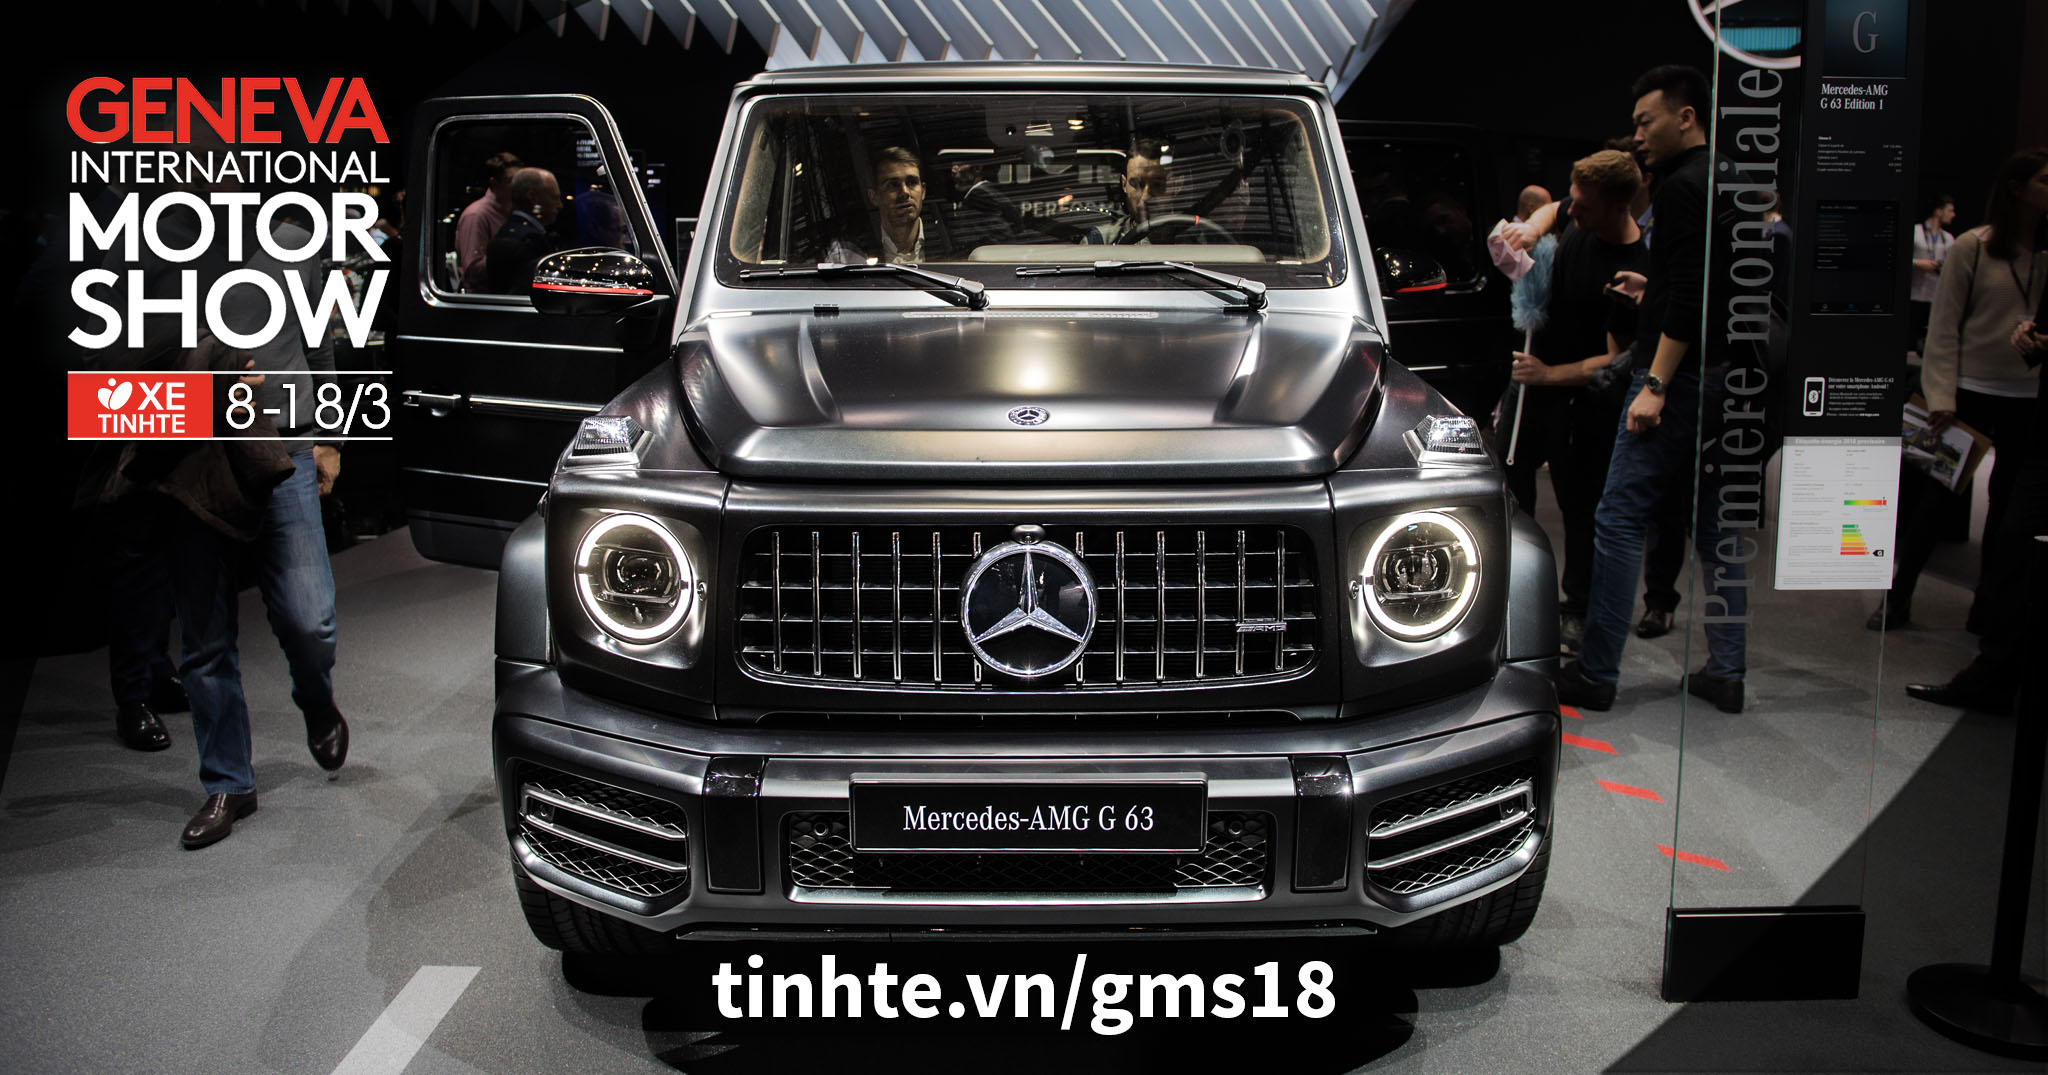 #GMS18 Chi tiết Mercedes-AMG G63 2019 - động cơ V8 mạnh 577 mã lực, có tùy chọn Multi-beam LED